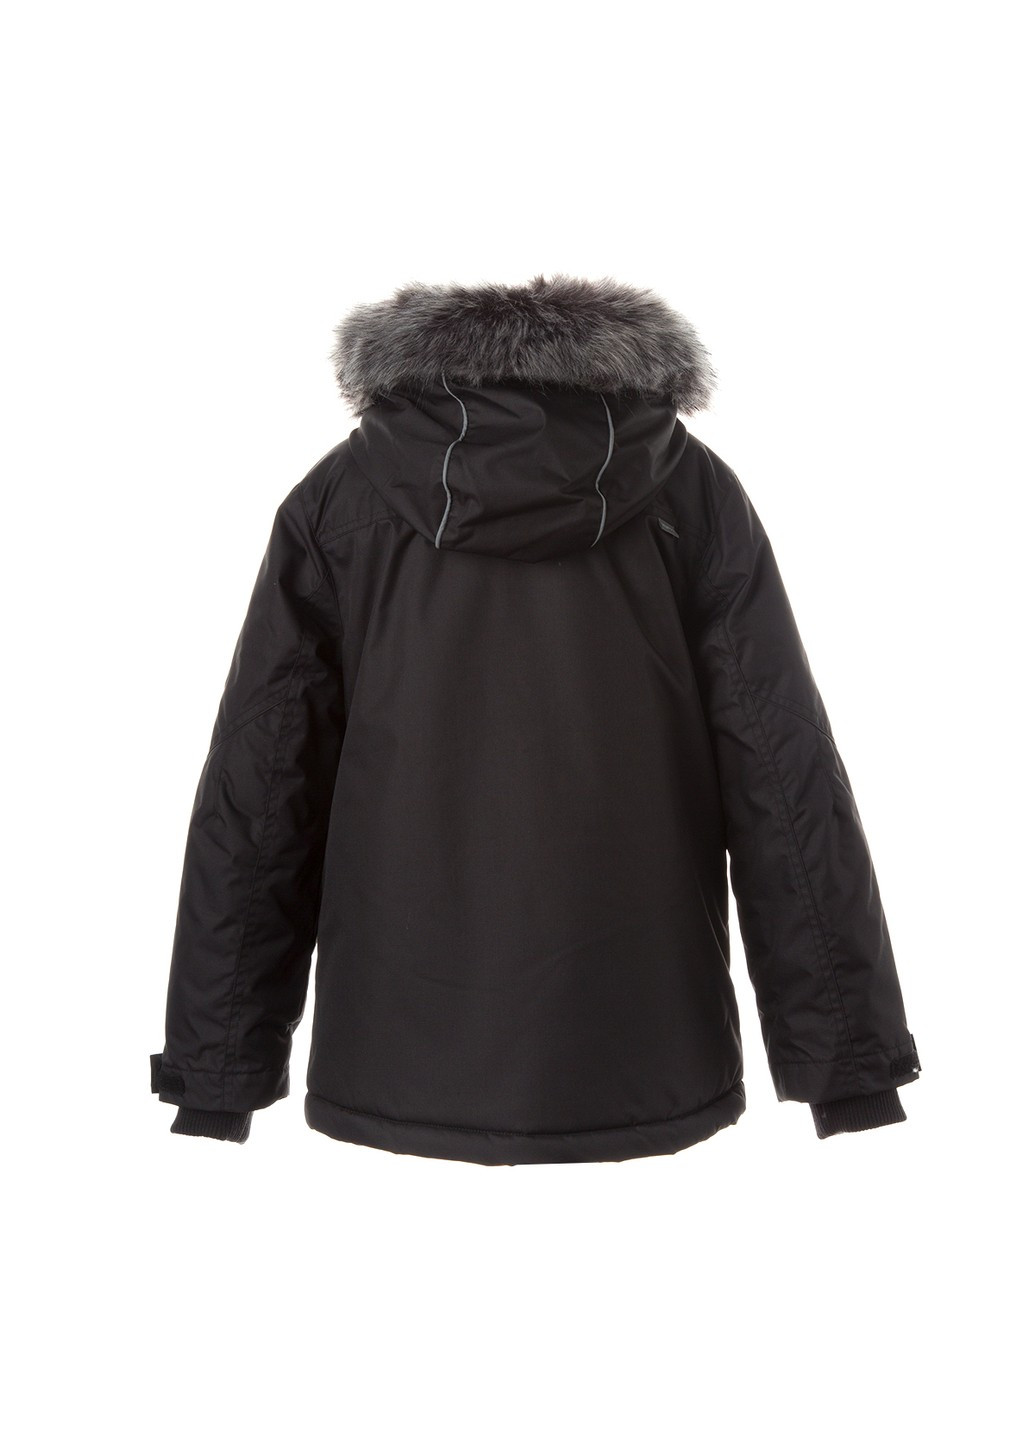 Черная зимняя куртка зимняя marten 2 Huppa